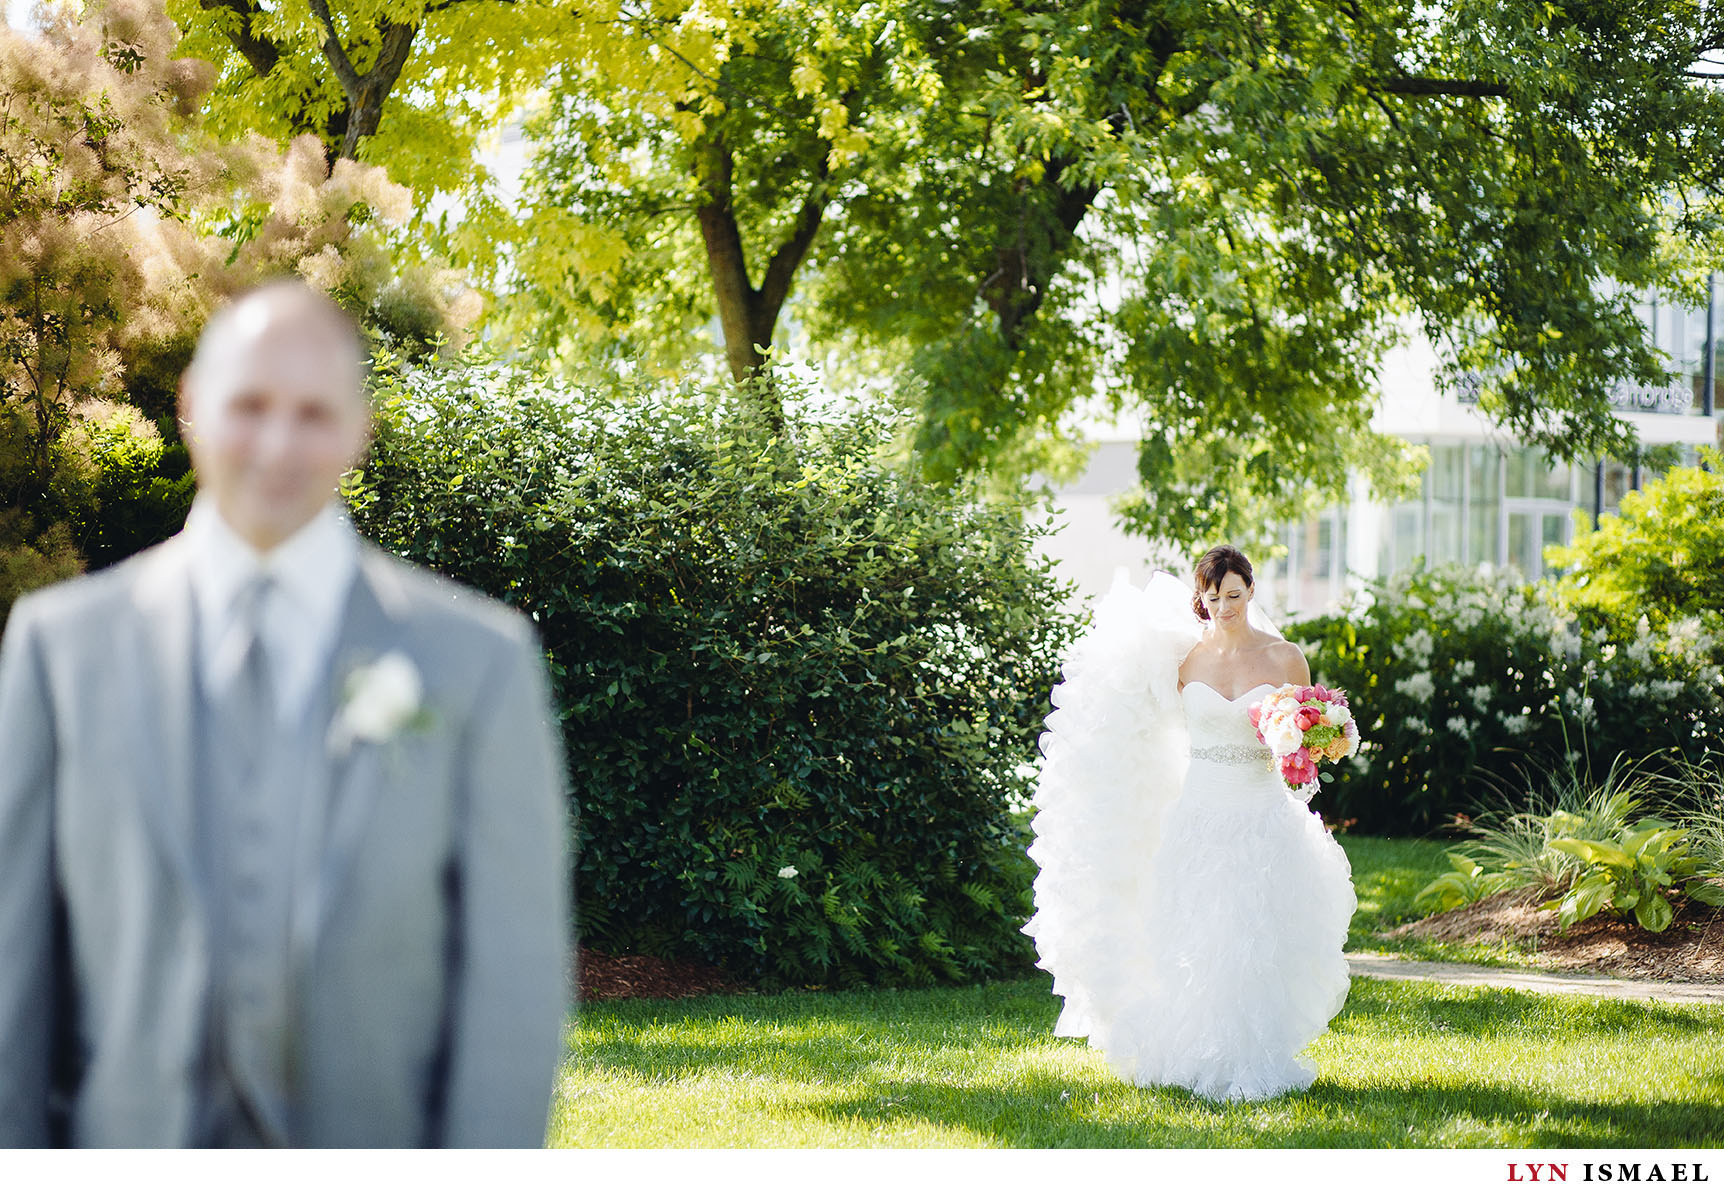 The bride sneaks up behind the groom.